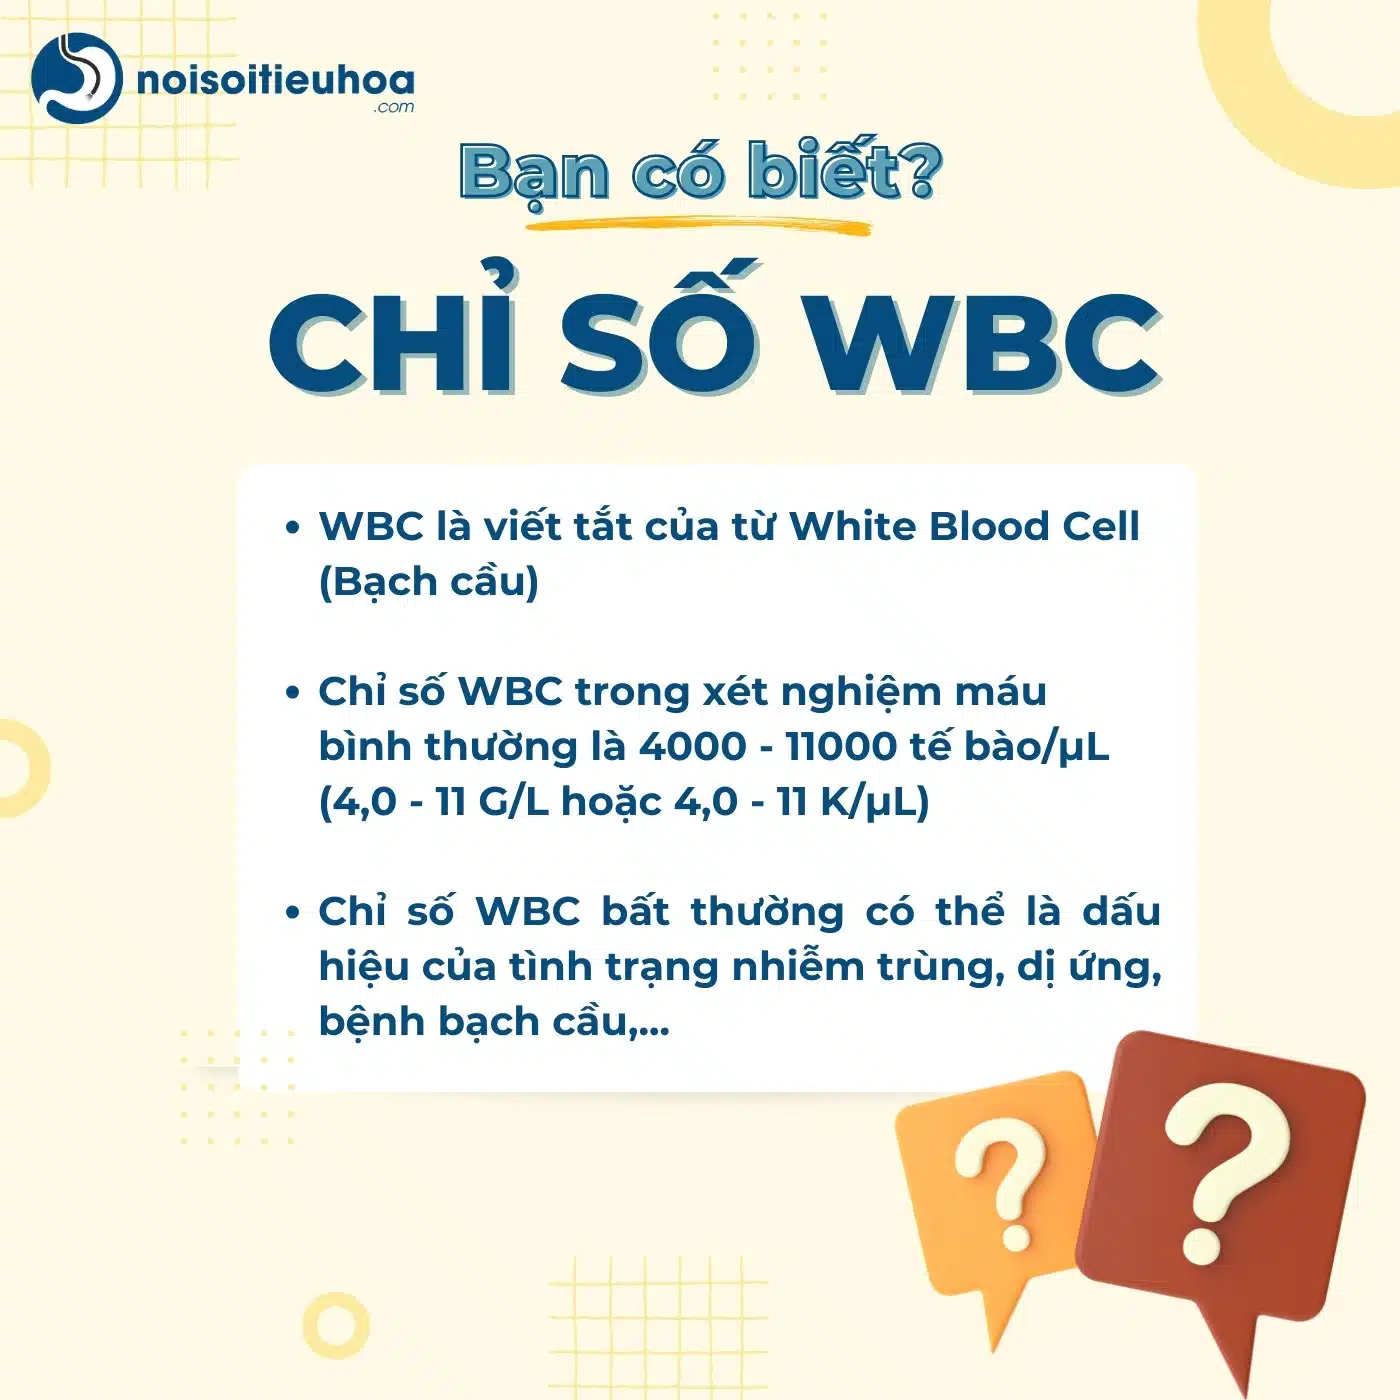 WBC là gì? WBC trong xét nghiệm máu là gì?